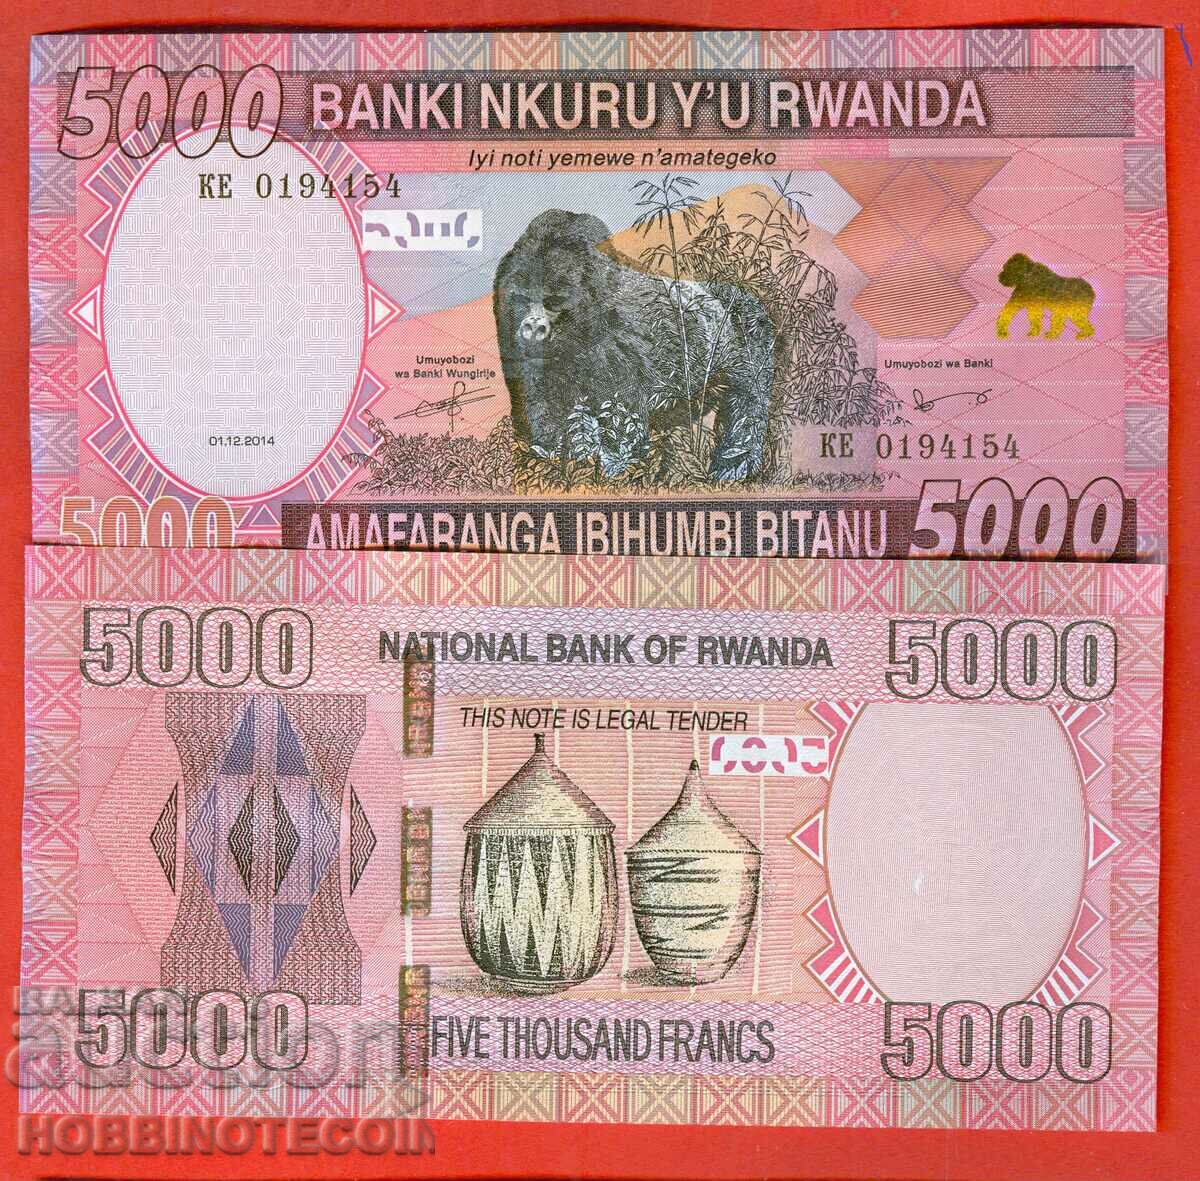 RWANDA RWANDA 5000 5000 Franc emisiune - emisiune 2014 NOU UNC